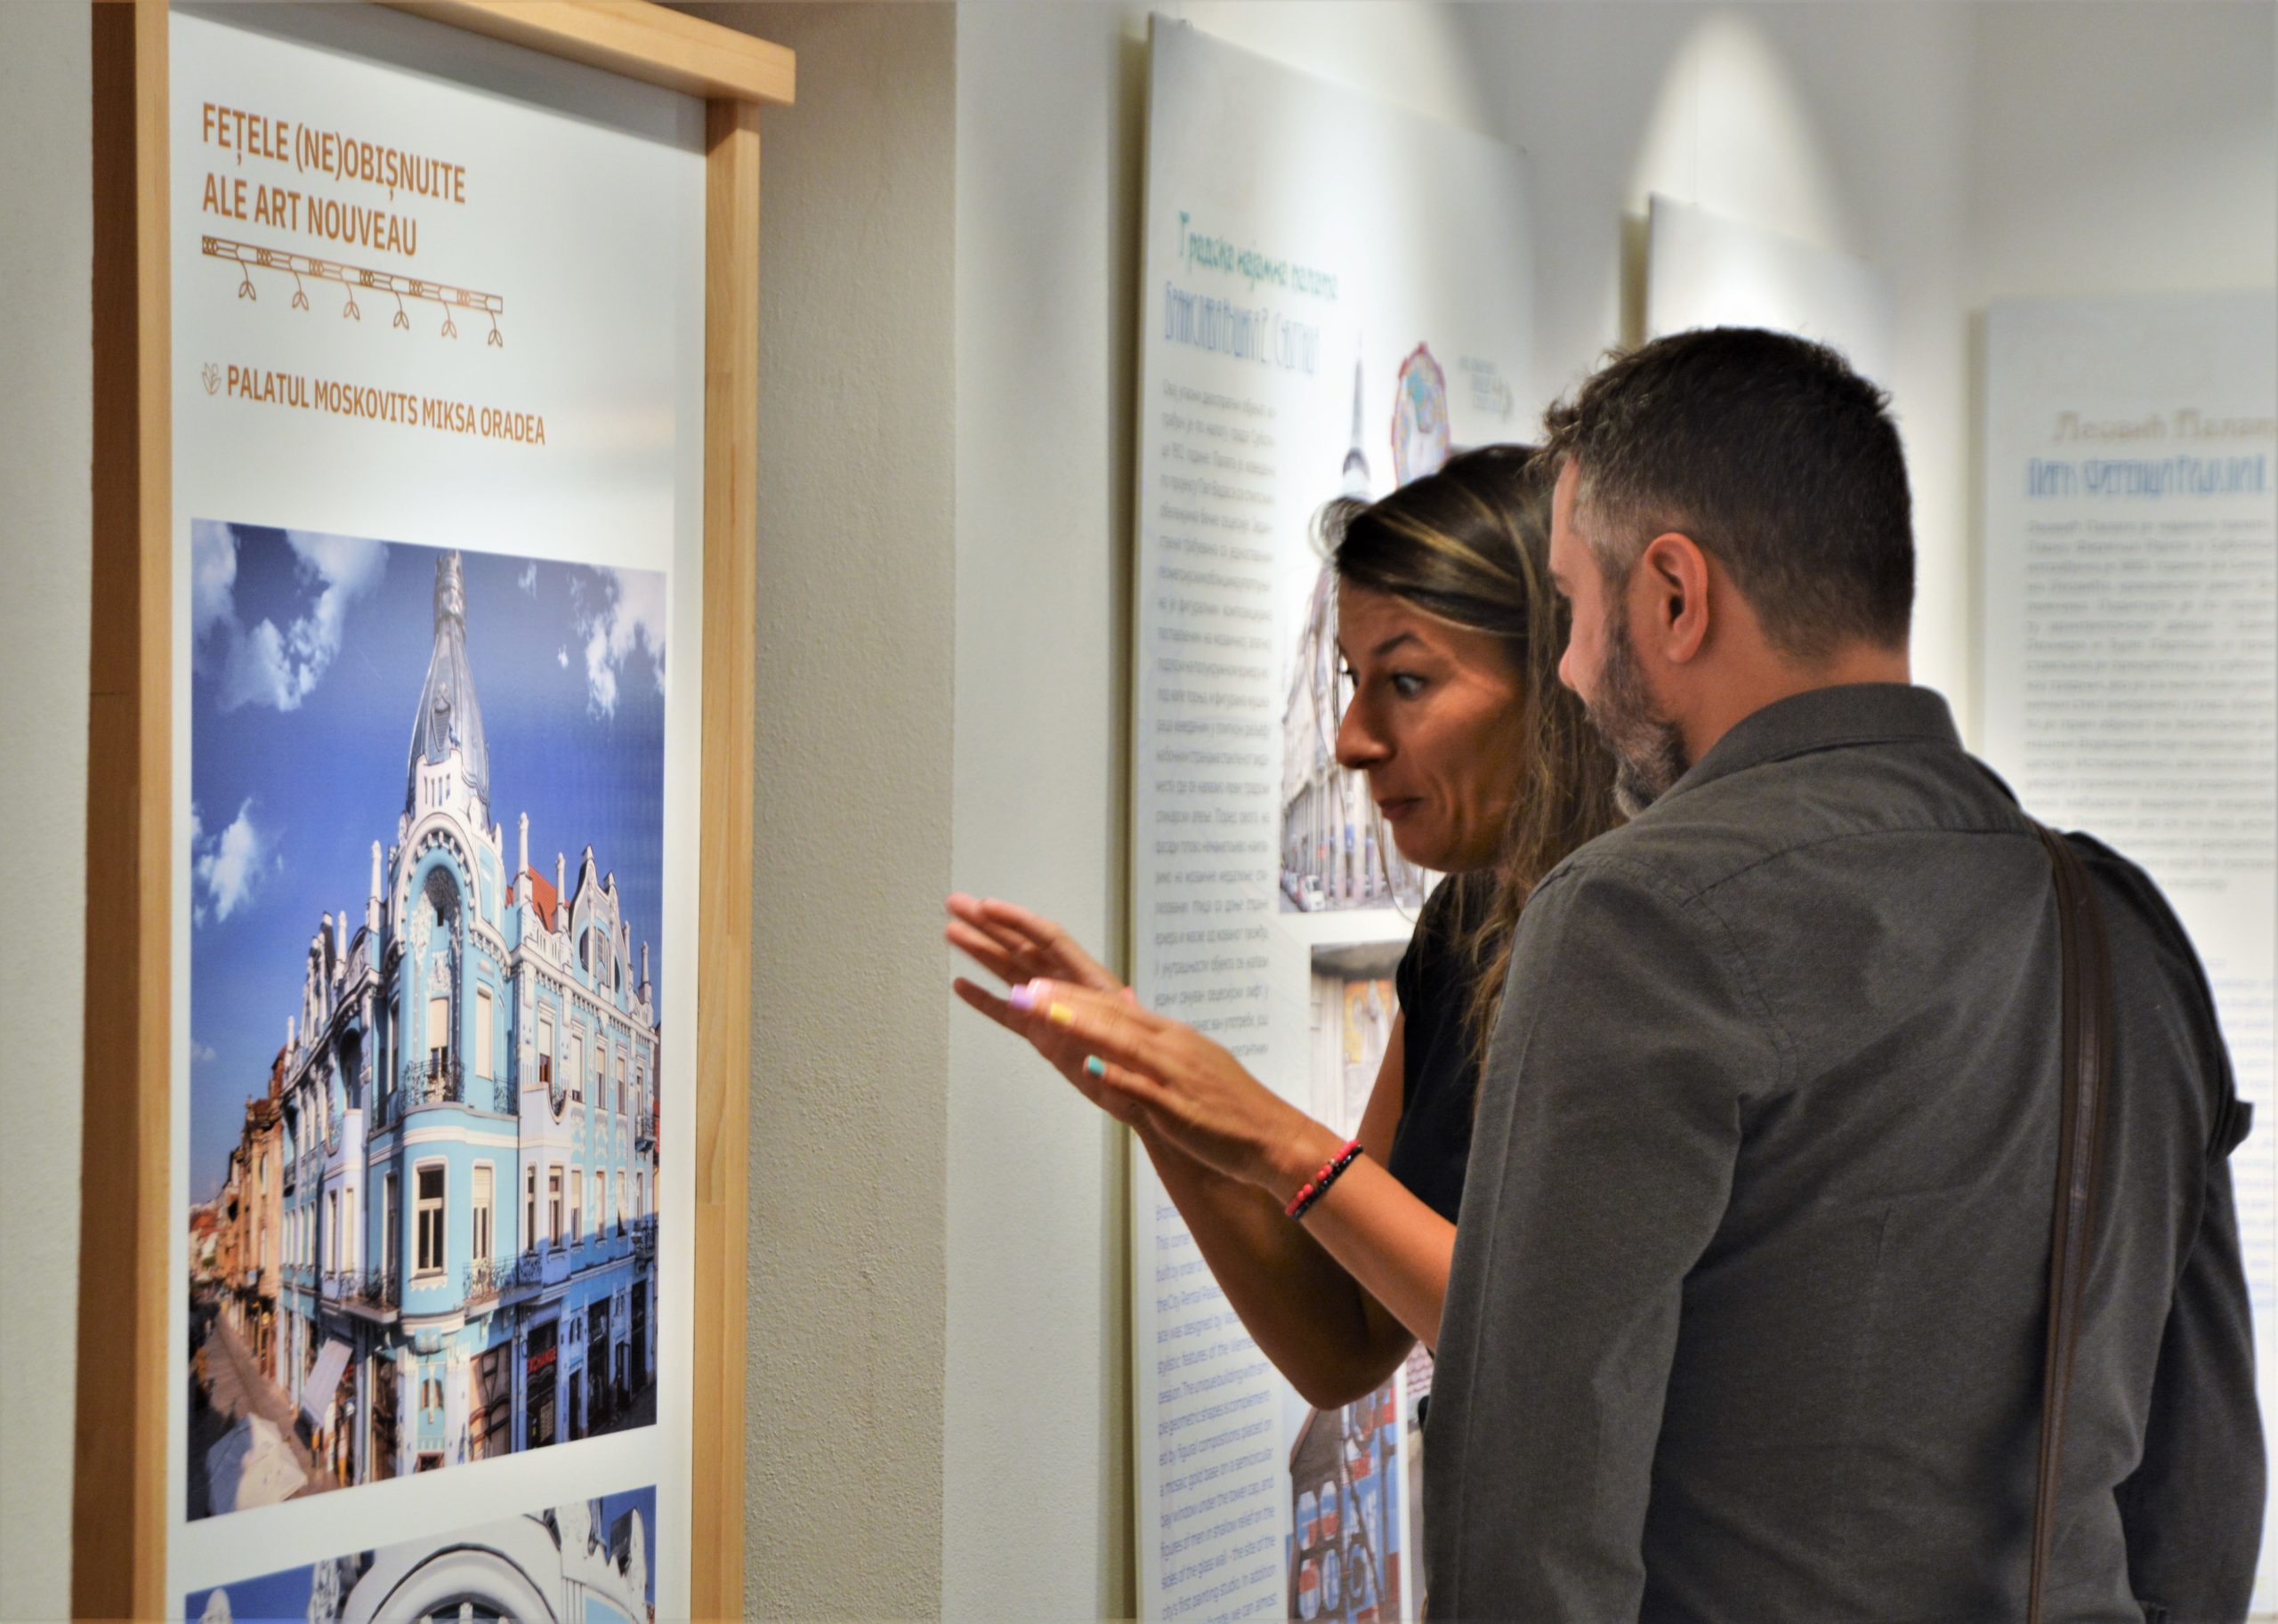 FOTO: Expoziţia „Fețele (ne)obișnuite ale Art Nouveau” 11.08.2022